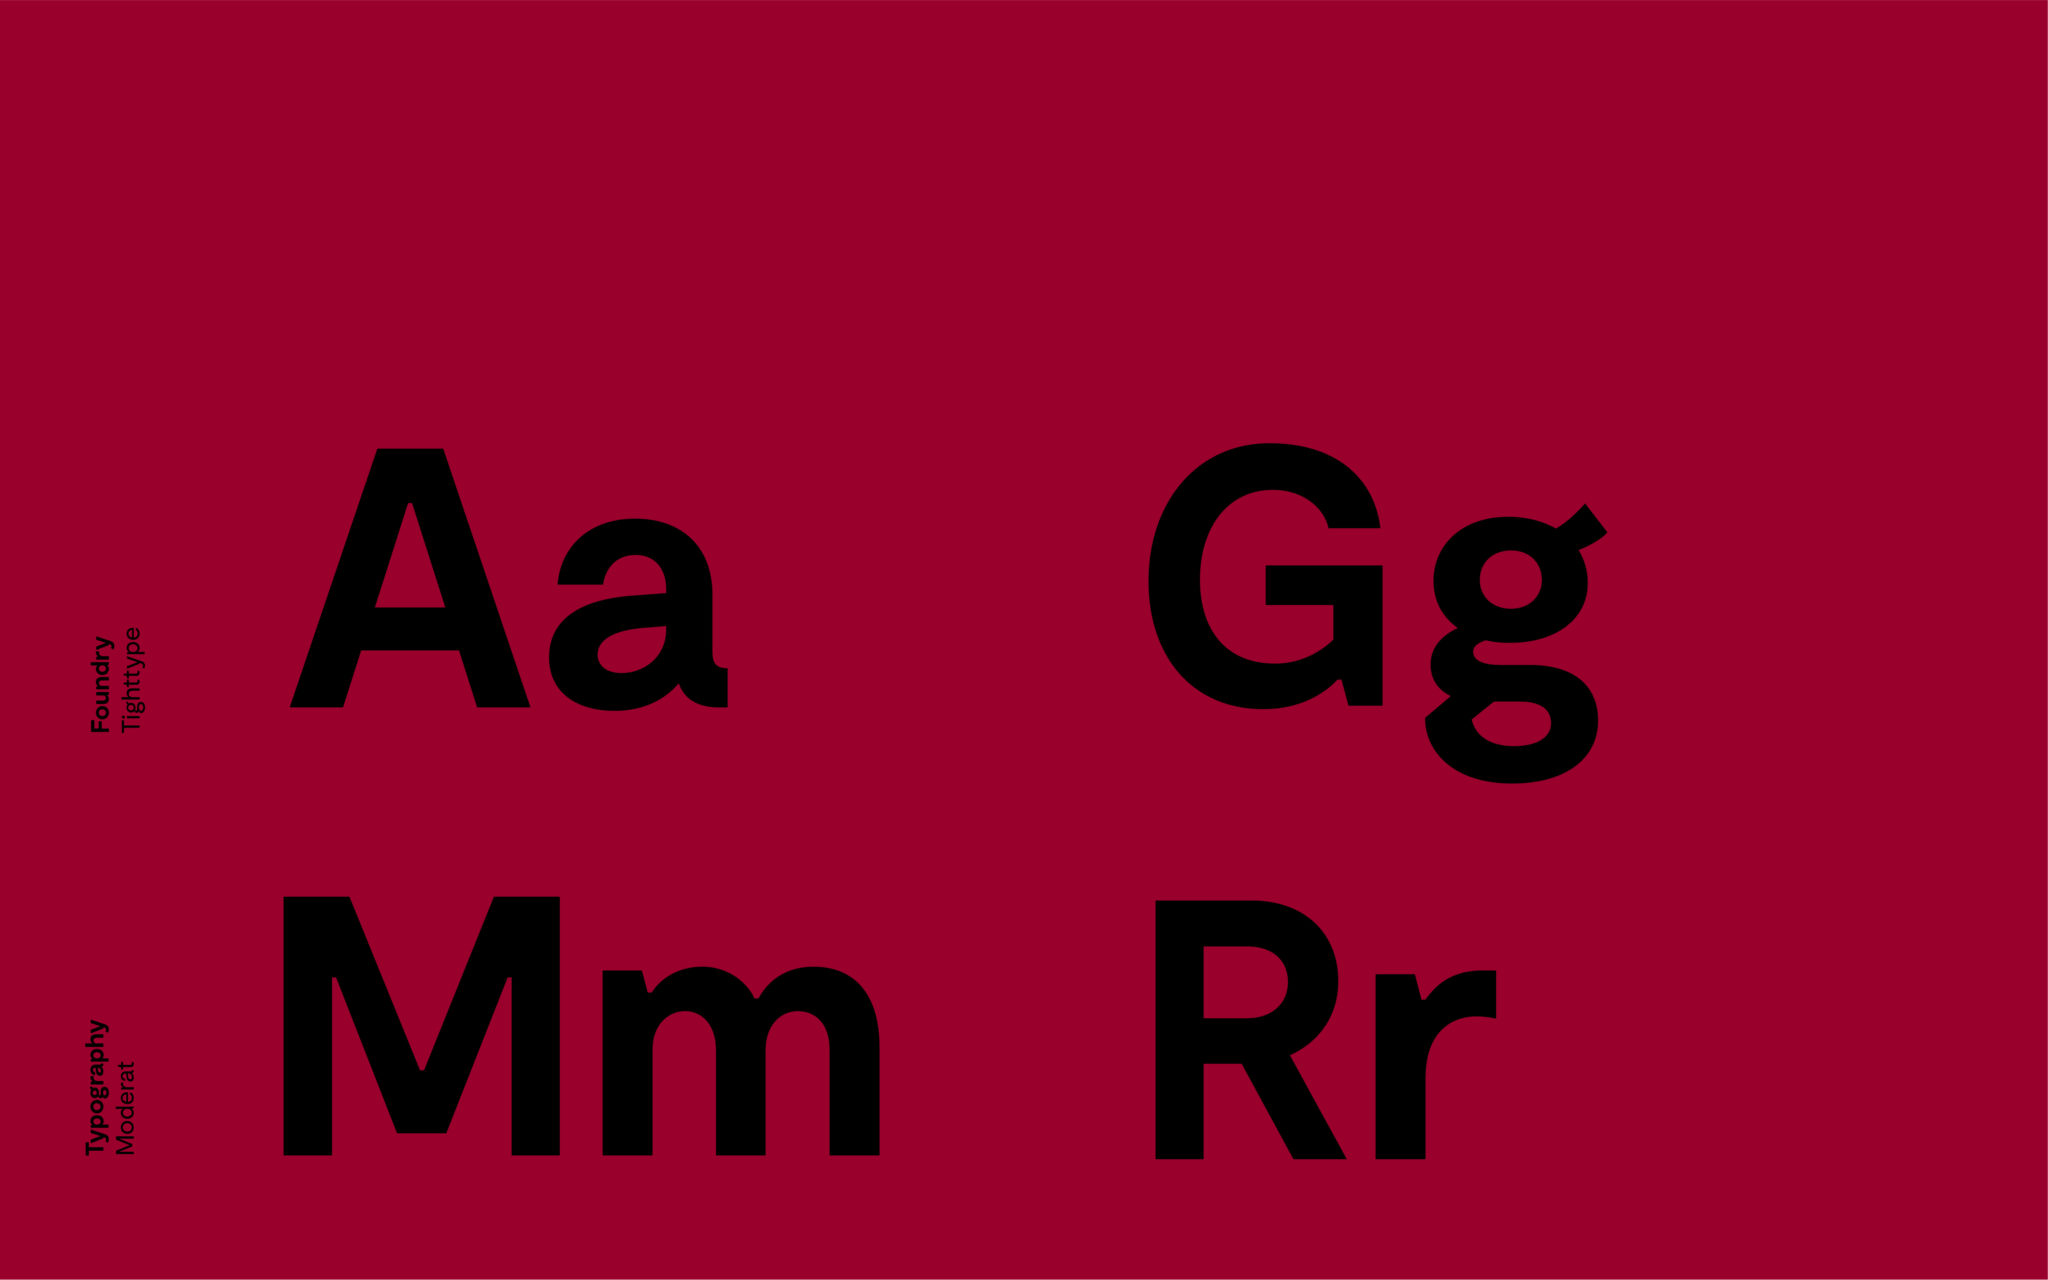 Typografi for Oslo Met, fonten Moderat. Svarte bokstaver på rød bakgrunn.